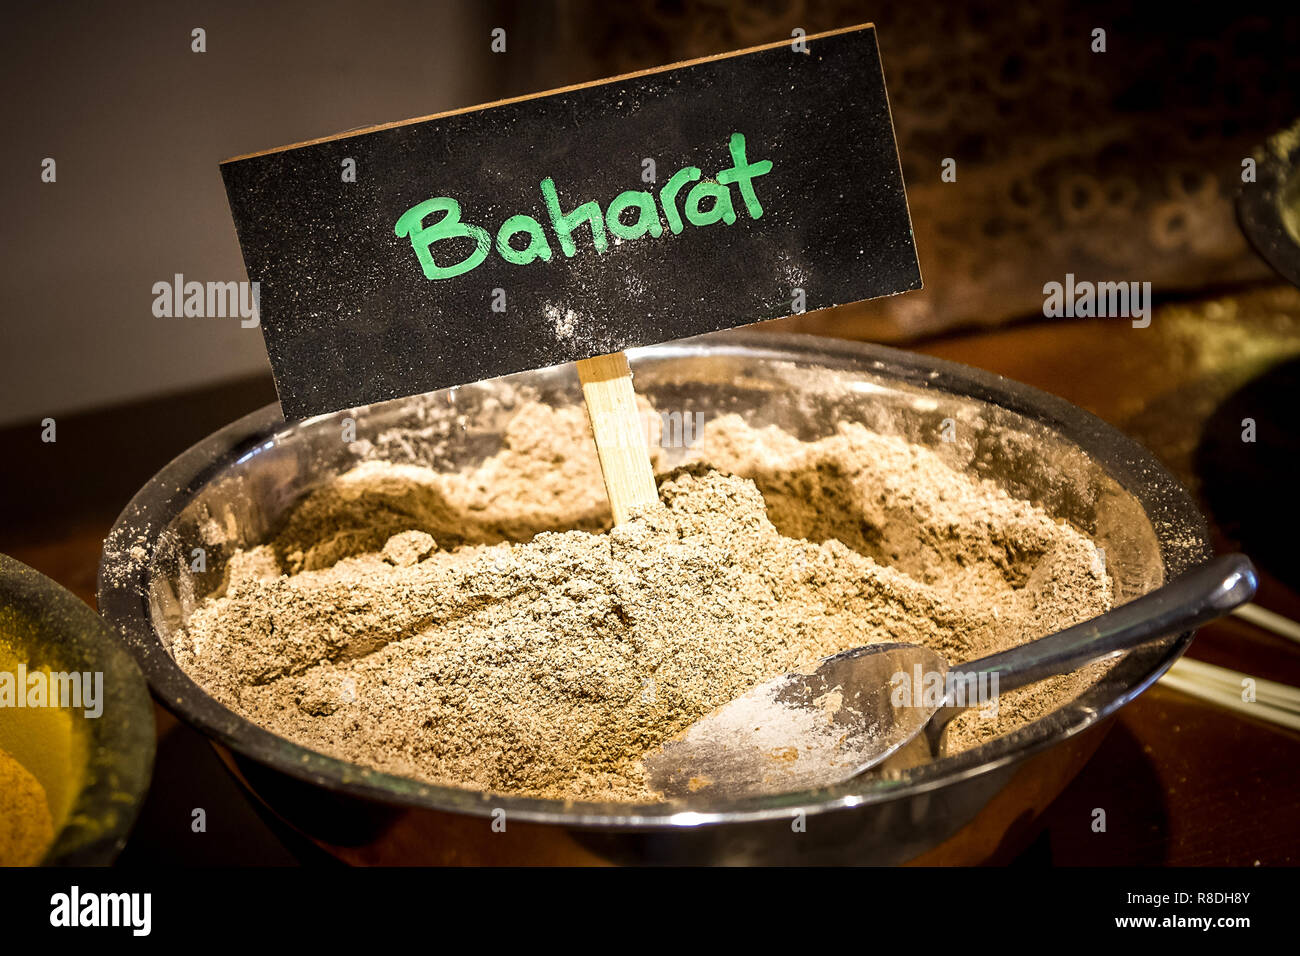 Baharat ist eine Arabische Gewürzmischung oder Mischung im Nahen Osten verwendet. Die Mischung aus fein gemahlenen Gewürzen ist oft zu Fleisch und Suppen verwendet und können verwendet werden. Stockfoto